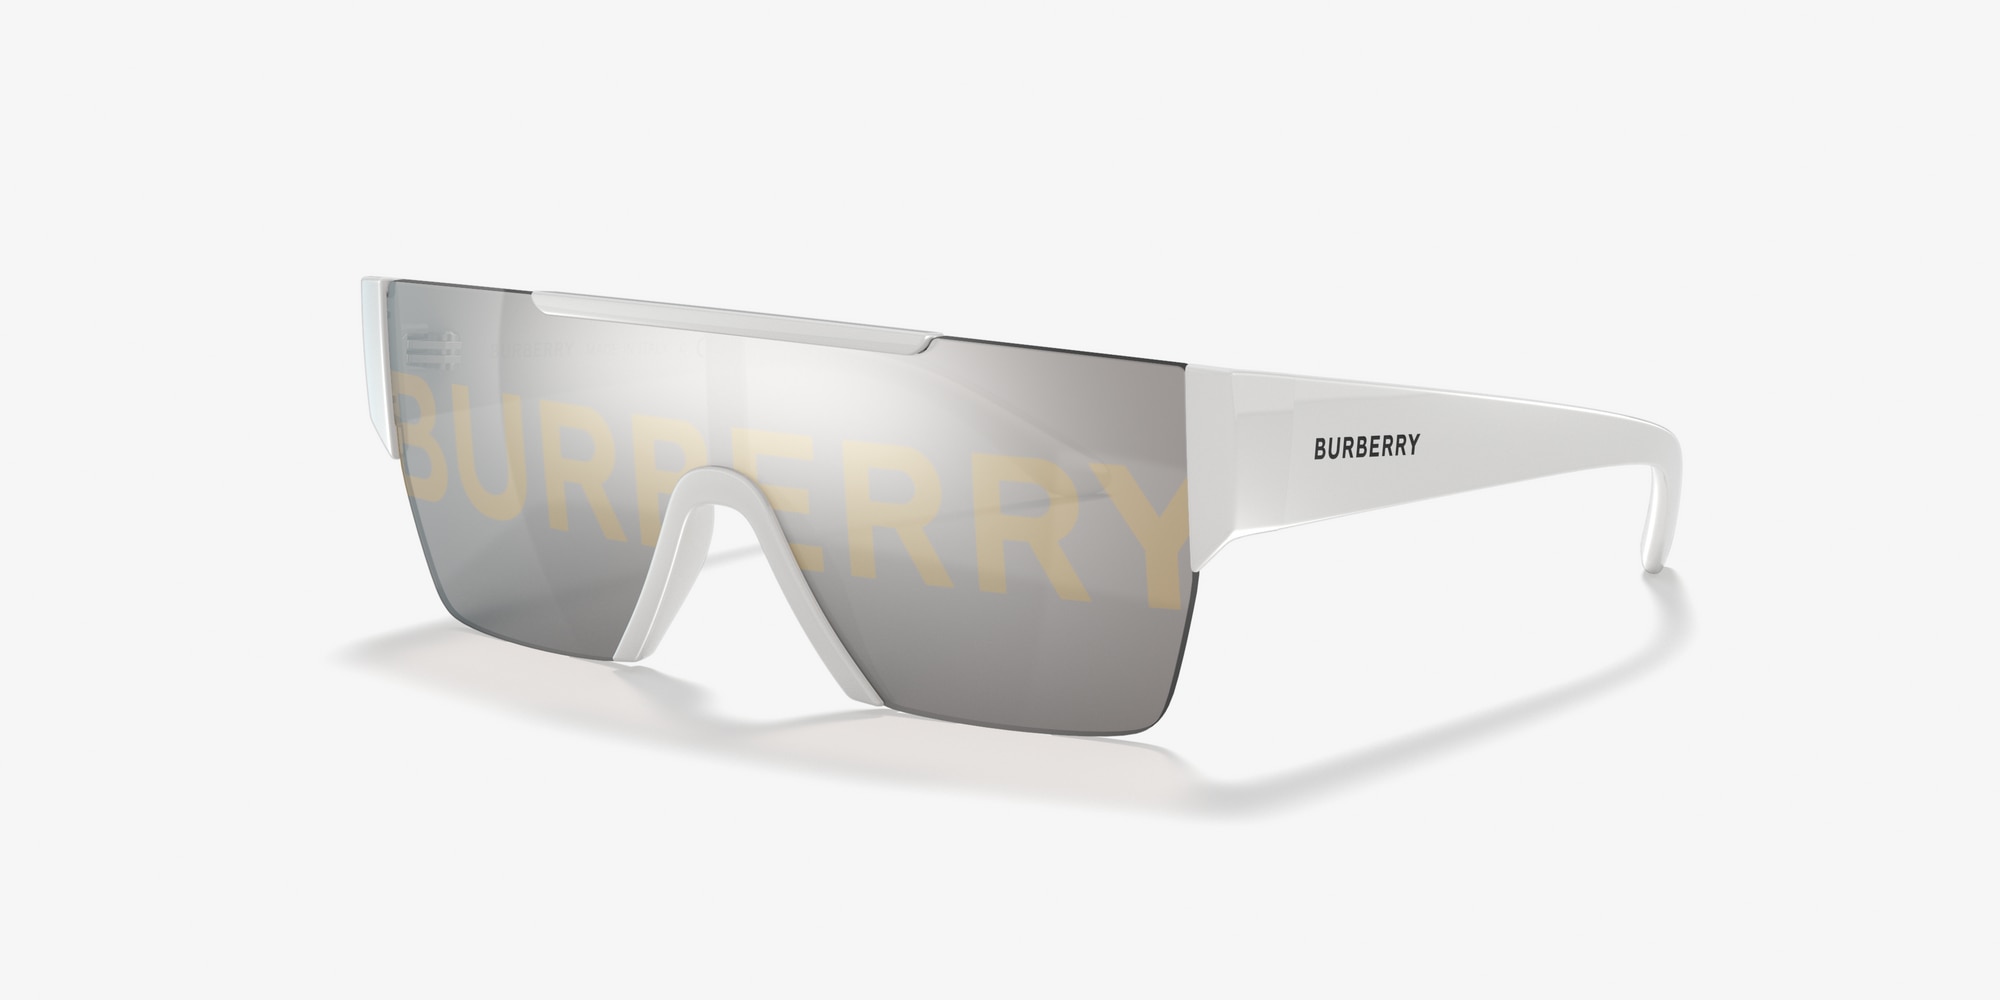 burberry sunglasses canada